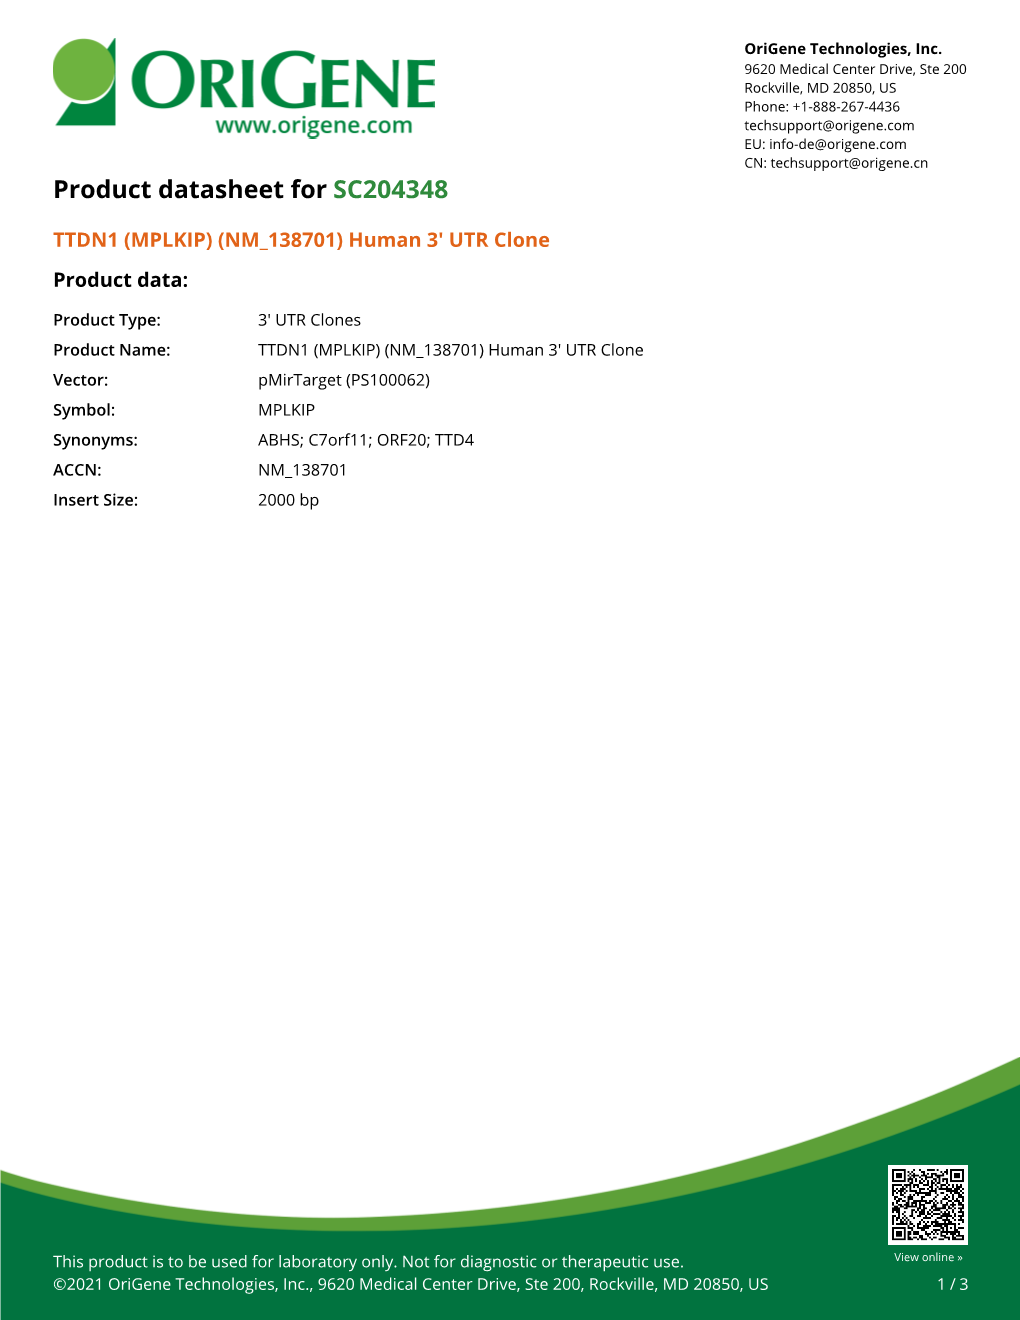 TTDN1 (MPLKIP) (NM 138701) Human 3' UTR Clone Product Data